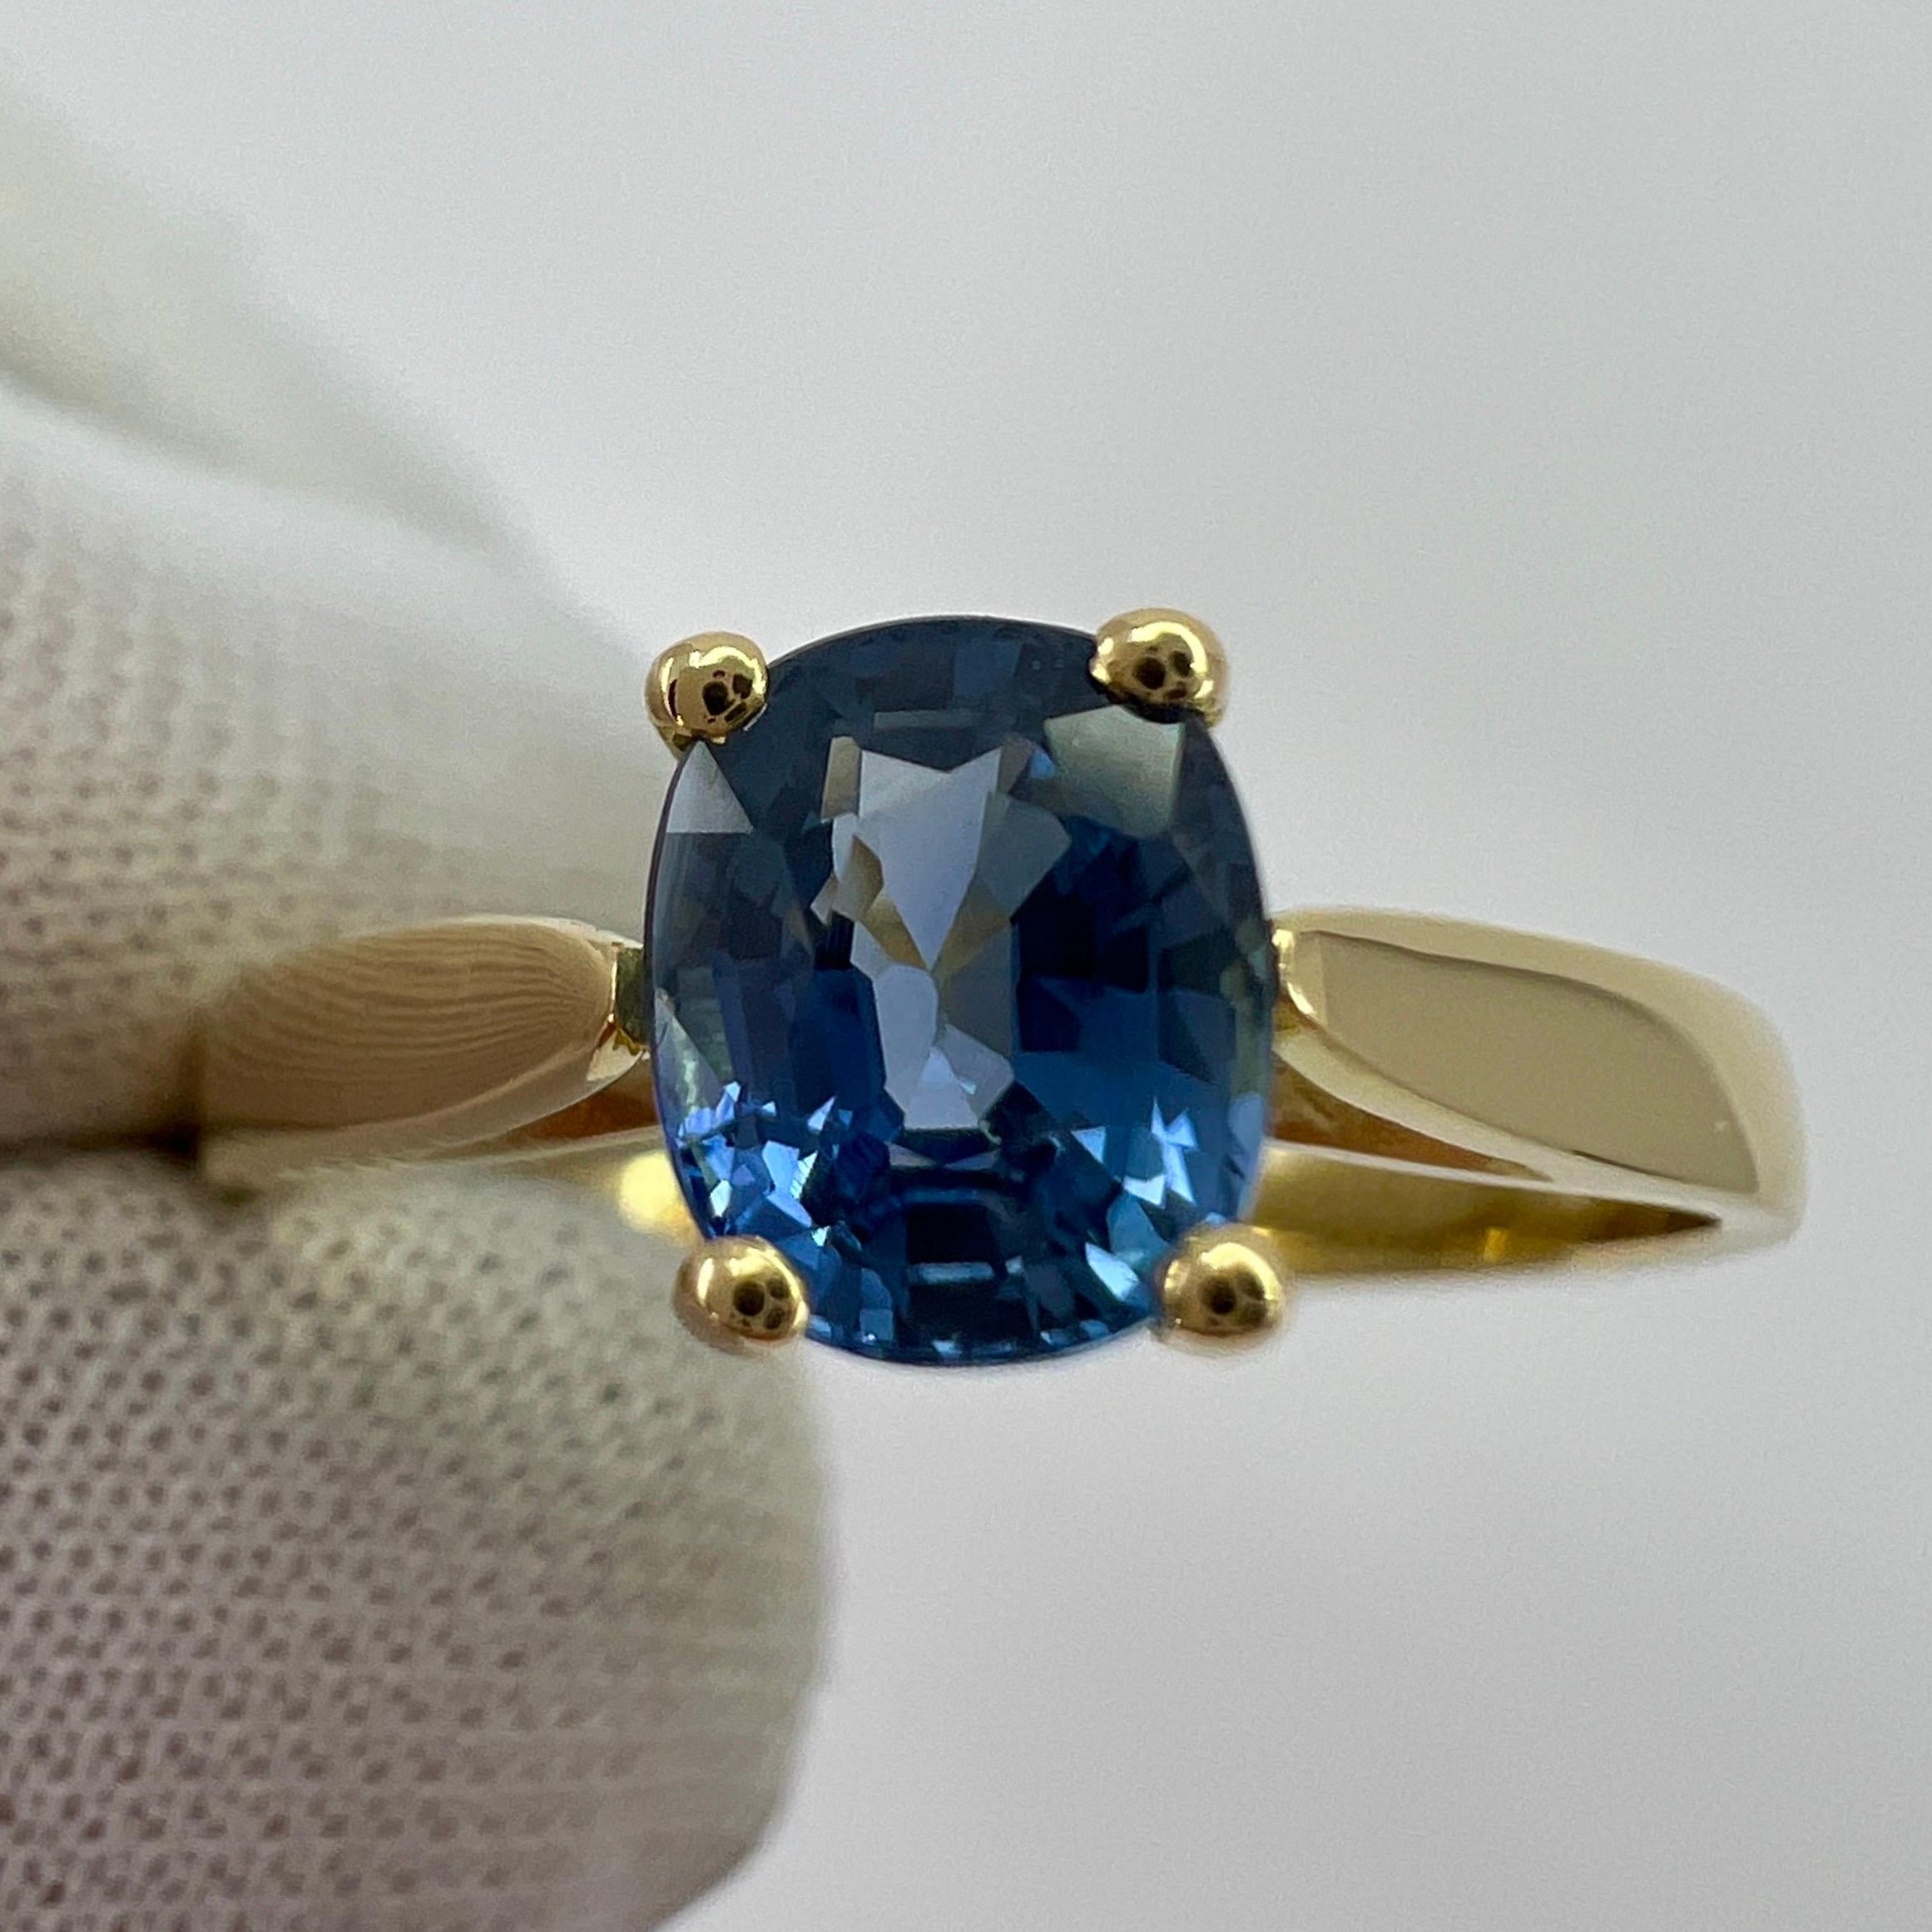 Vivid Cornflower Blue 1.03ct Ceylon Sapphire Cushion Cut 18k Gold Solitaire Ring 5